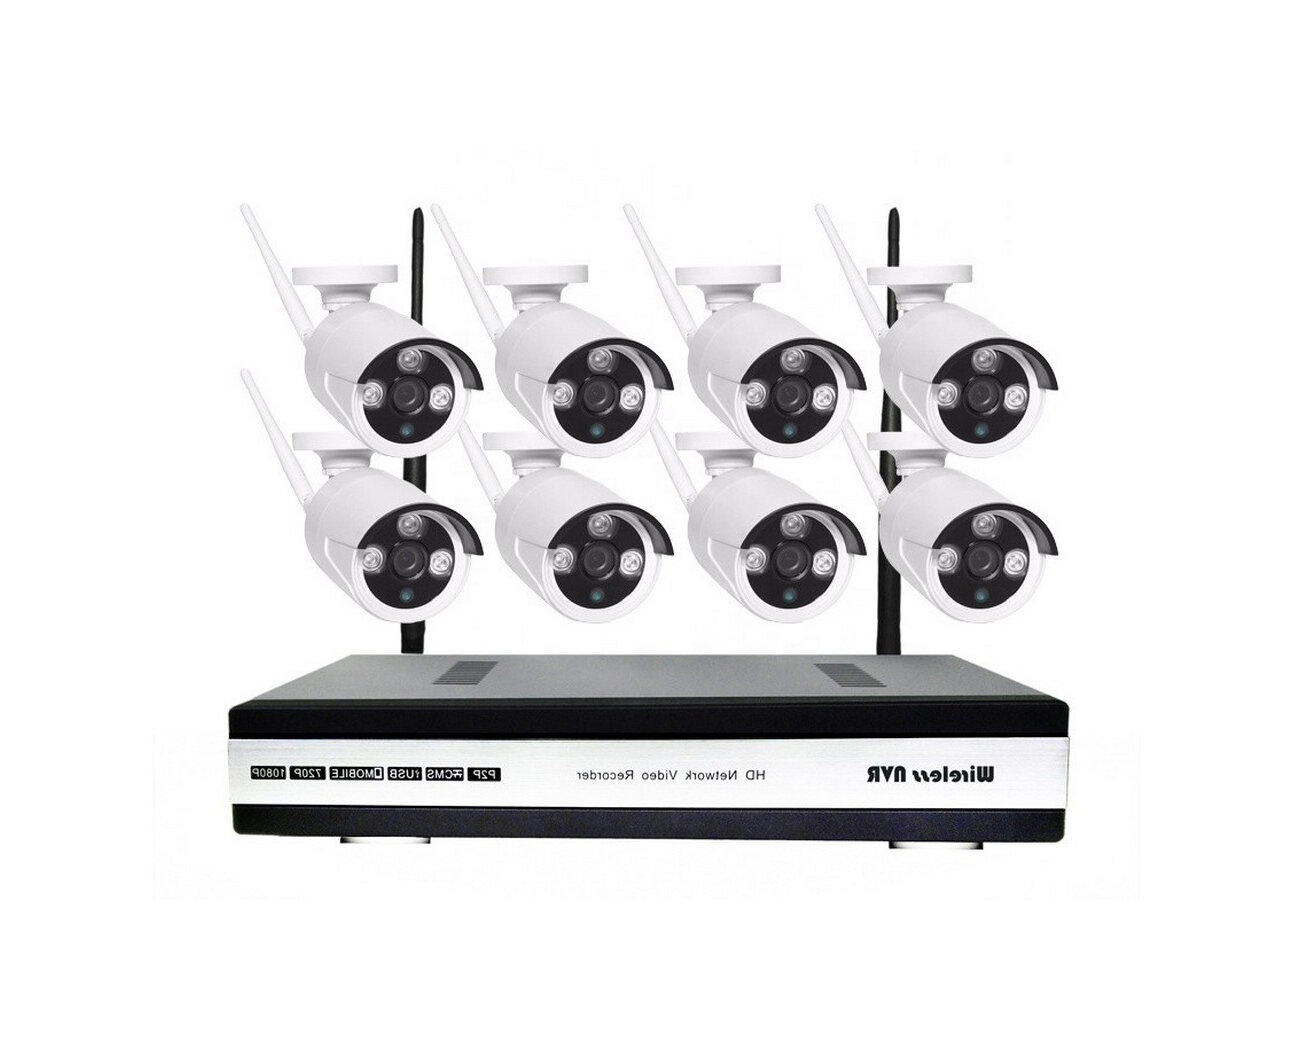 Окта Вижион Мод: Клоуд - 01-8 (J38316SYT) - облачный комплект беспроводного видеонаблюдения на 8 камер - комплект видеонаблюдения на 8 уличные камер.